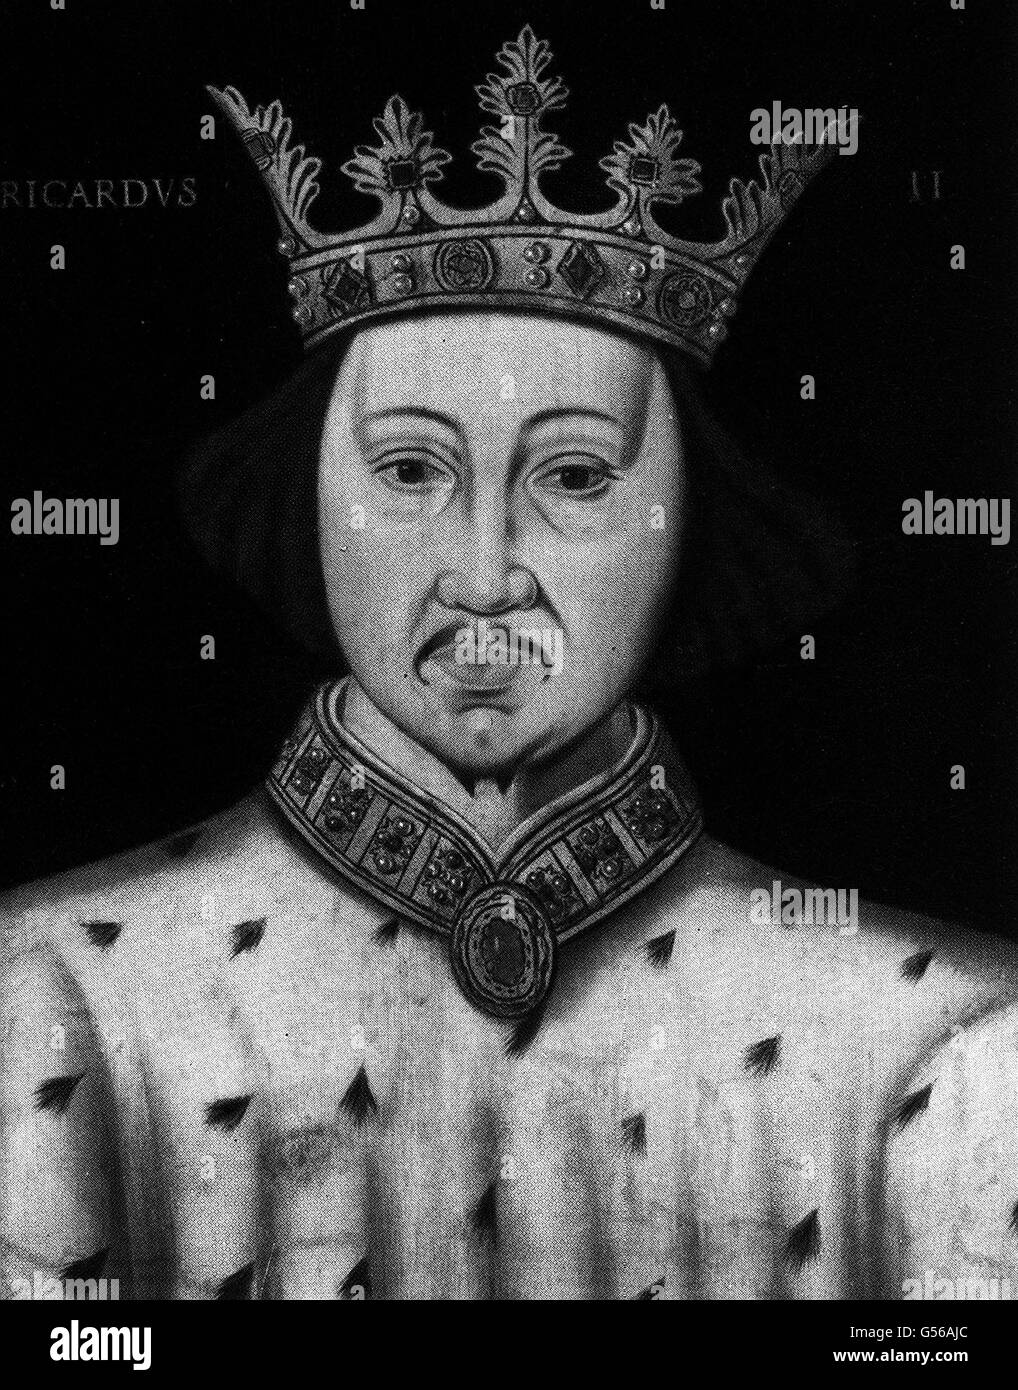 29/09/1399 - EN CE JOUR DE 1399 - le roi Richard II d'Angleterre est forcé de s'abdiquer en faveur de Henry Bolingbroke (Henry IV) 14/02/1400: En ce jour de 1400, le roi abdiqué Richard II est assassiné dans le château de Pontefract LE ROI RICHARD II: Un portrait de Richard de Bordeaux (1367-1400) comme roi d'Angleterre (1377-1400). Son règne a été troublé par le mécontentement populaire (notamment la révolte des paysans) et l'opposition baronique. Il a été forcé de abdiquer en faveur de Henry Bolingbroke (plus tard Henry IV) et est mort au château de Pontefract dans des circonstances mystérieuses. Banque D'Images